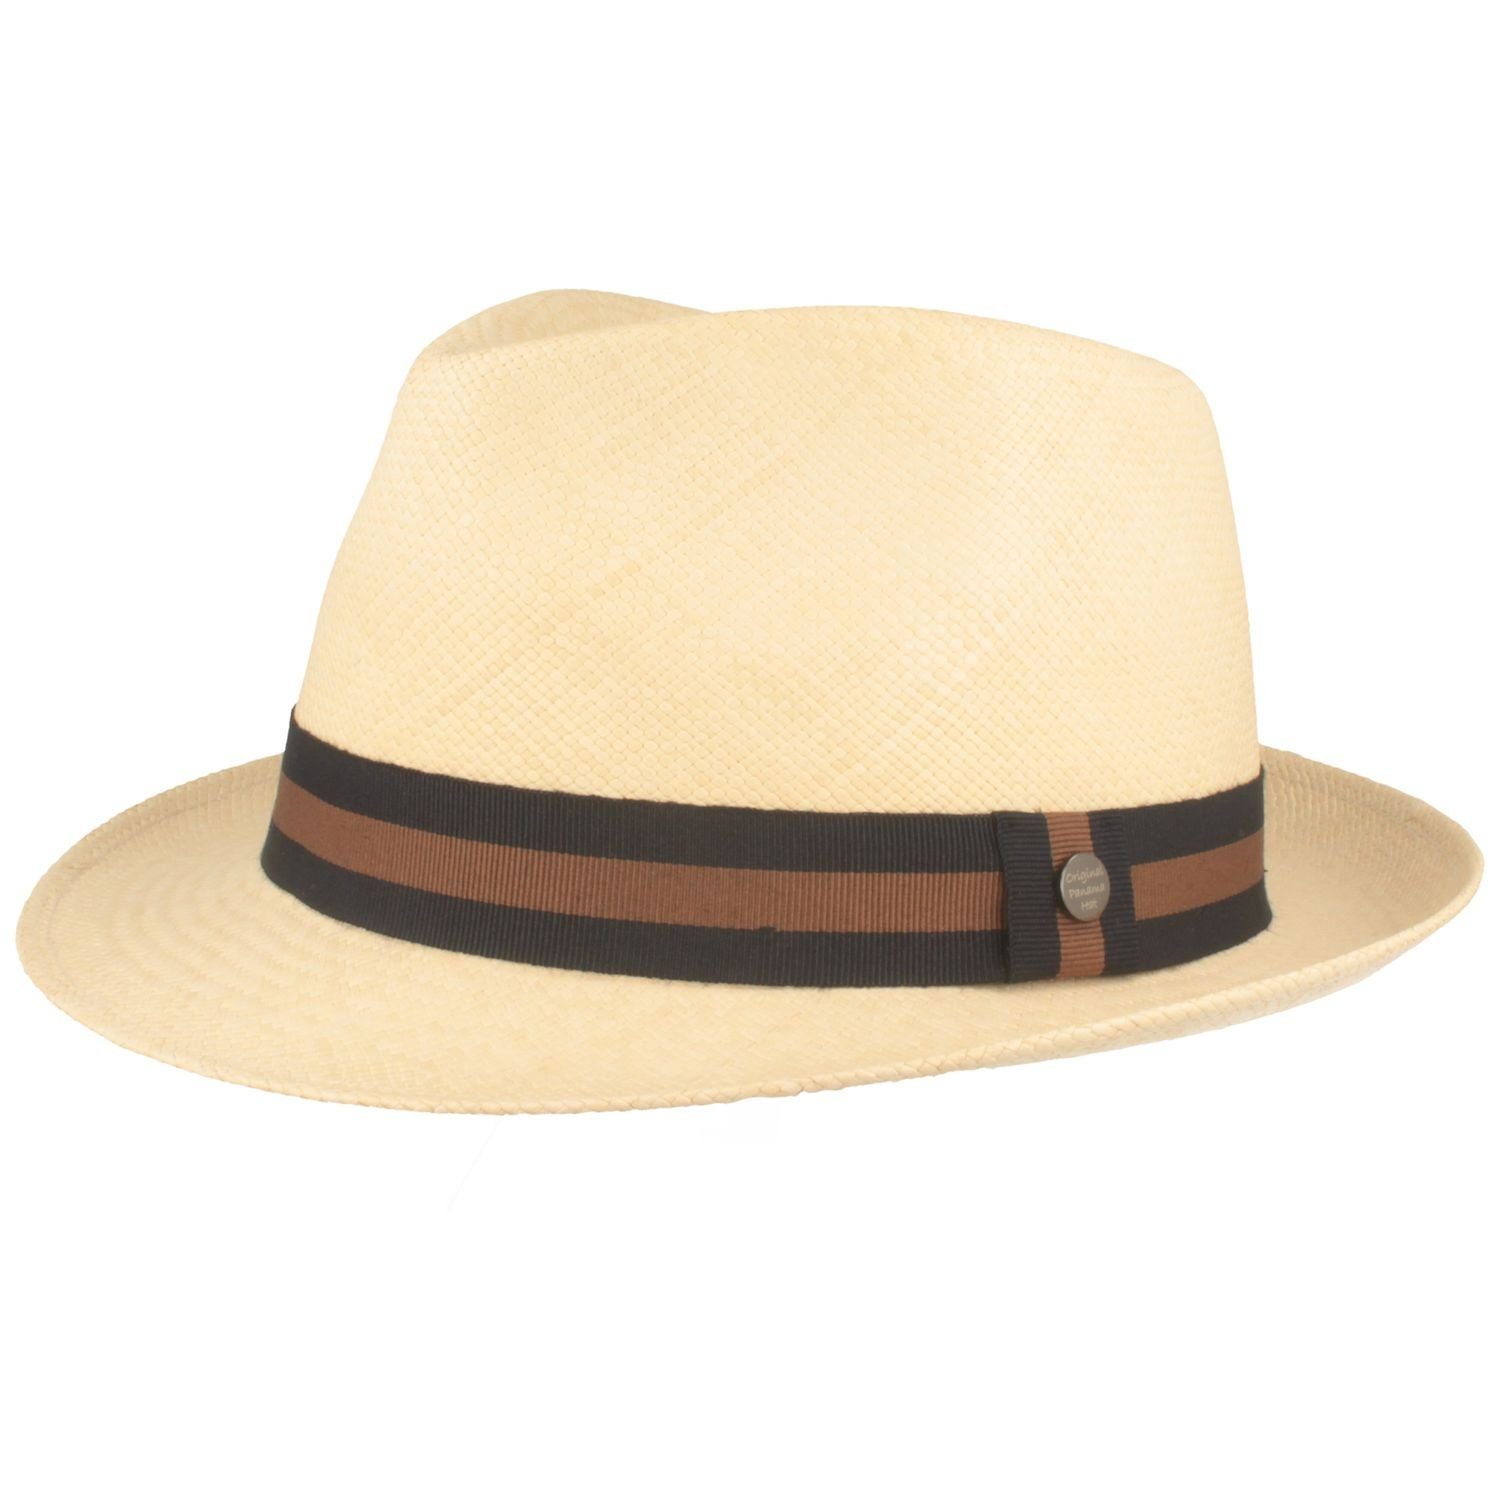 Breiter Strohhut Trilby moderner Hut mit Panama 50+ UV-Schutz Garnitur natur